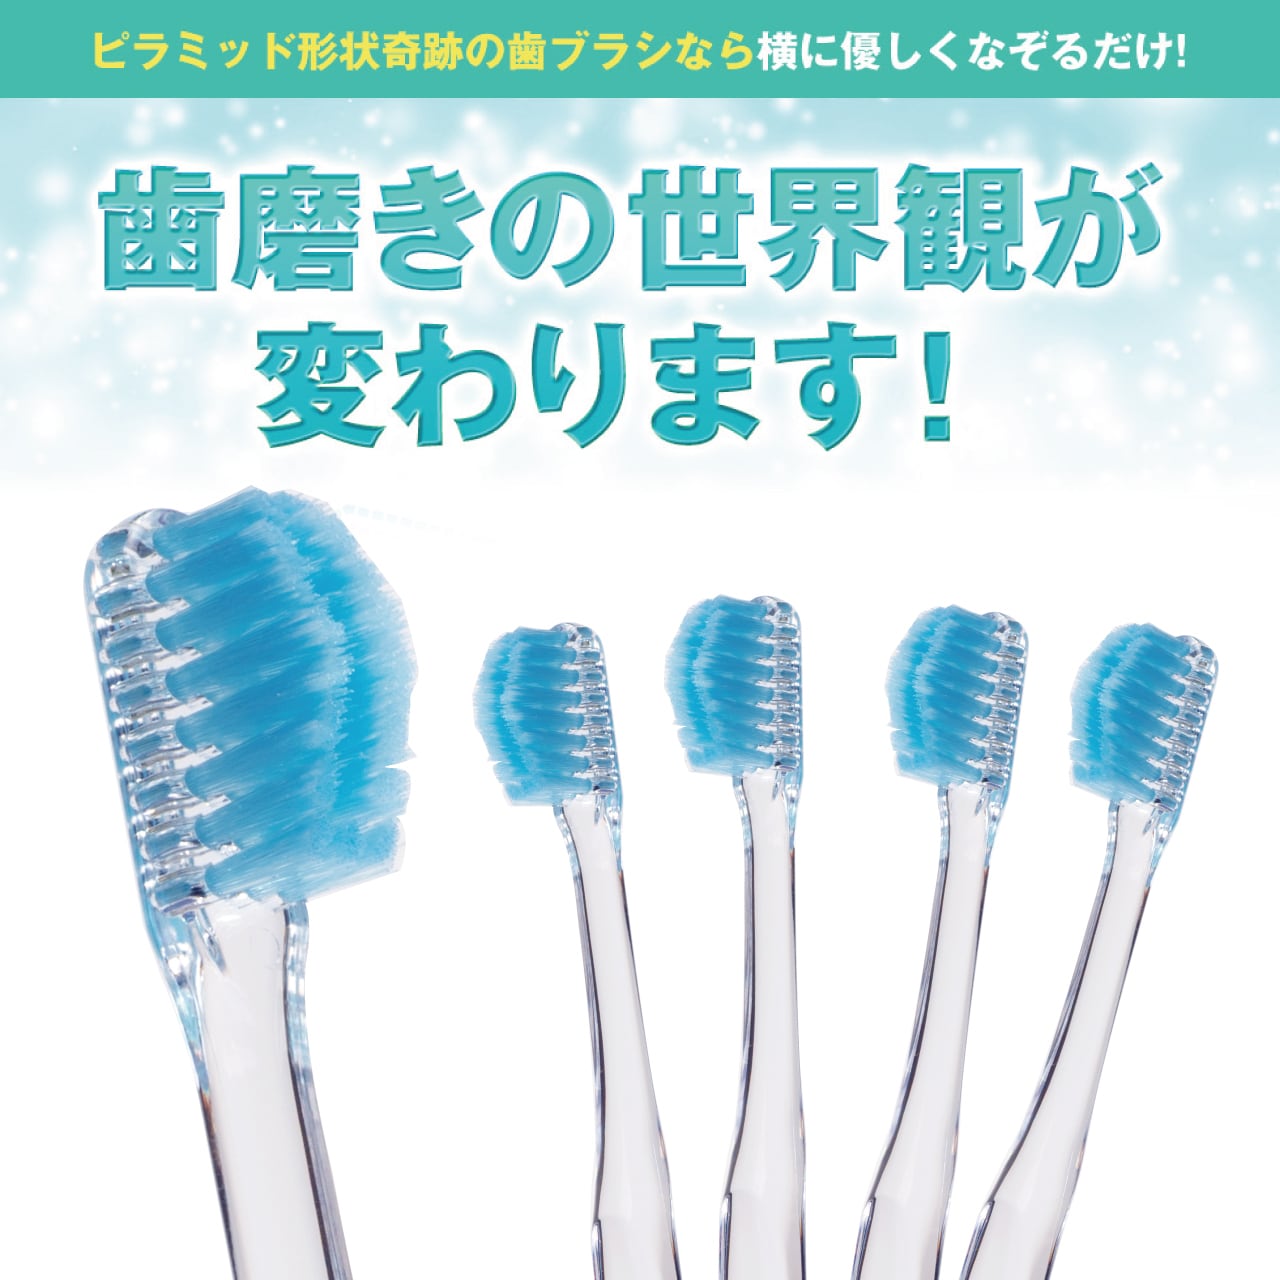 奇跡の歯ブラシ(ミュゼホワイトニング限定モデル) 5本 【ブルー